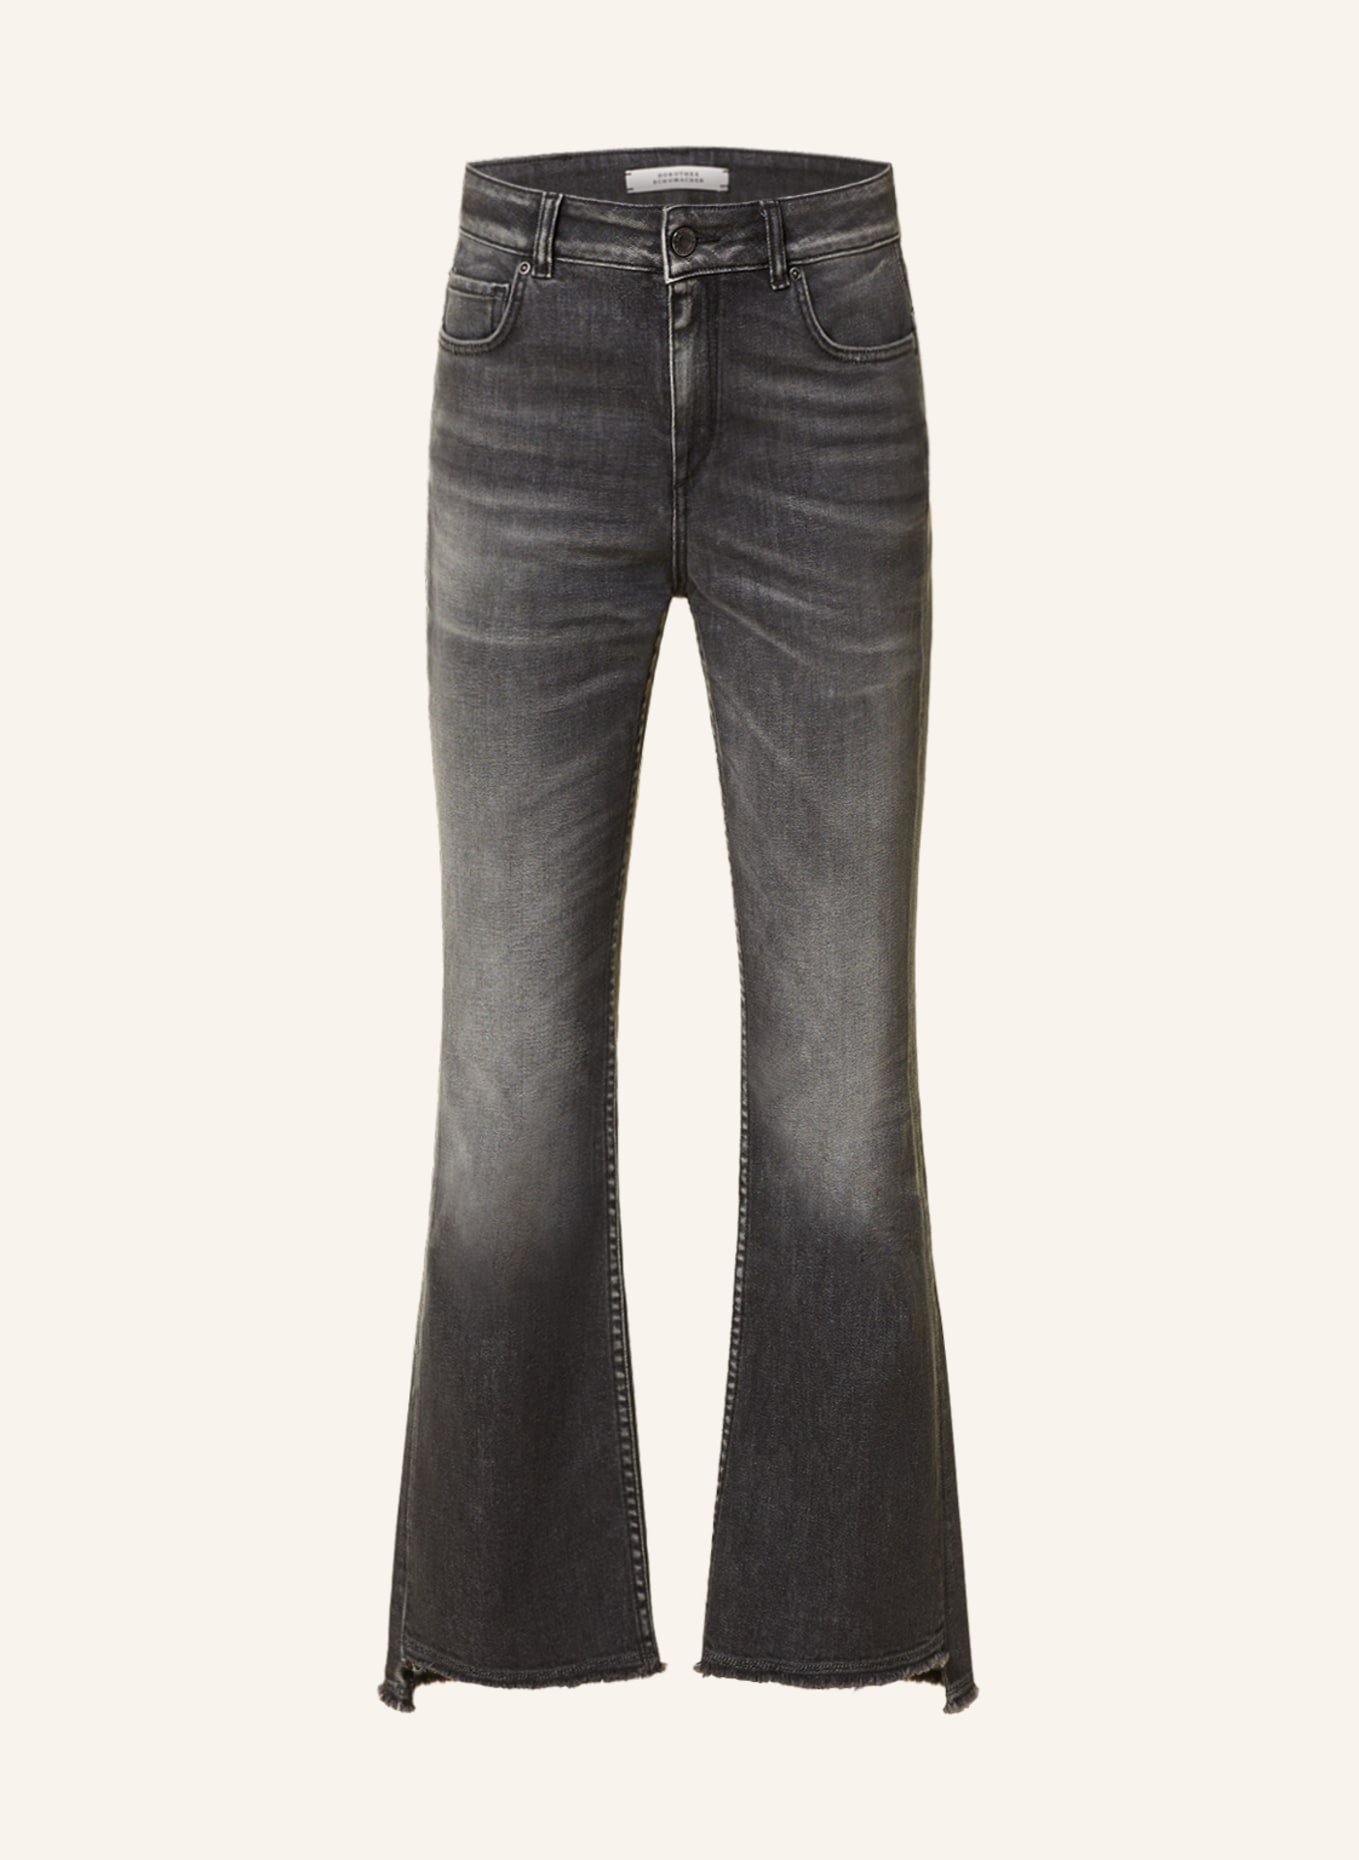 DOROTHEE SCHUMACHER Flared Jeans, Farbe: 978 STRUCTURED GREY (Bild 1)